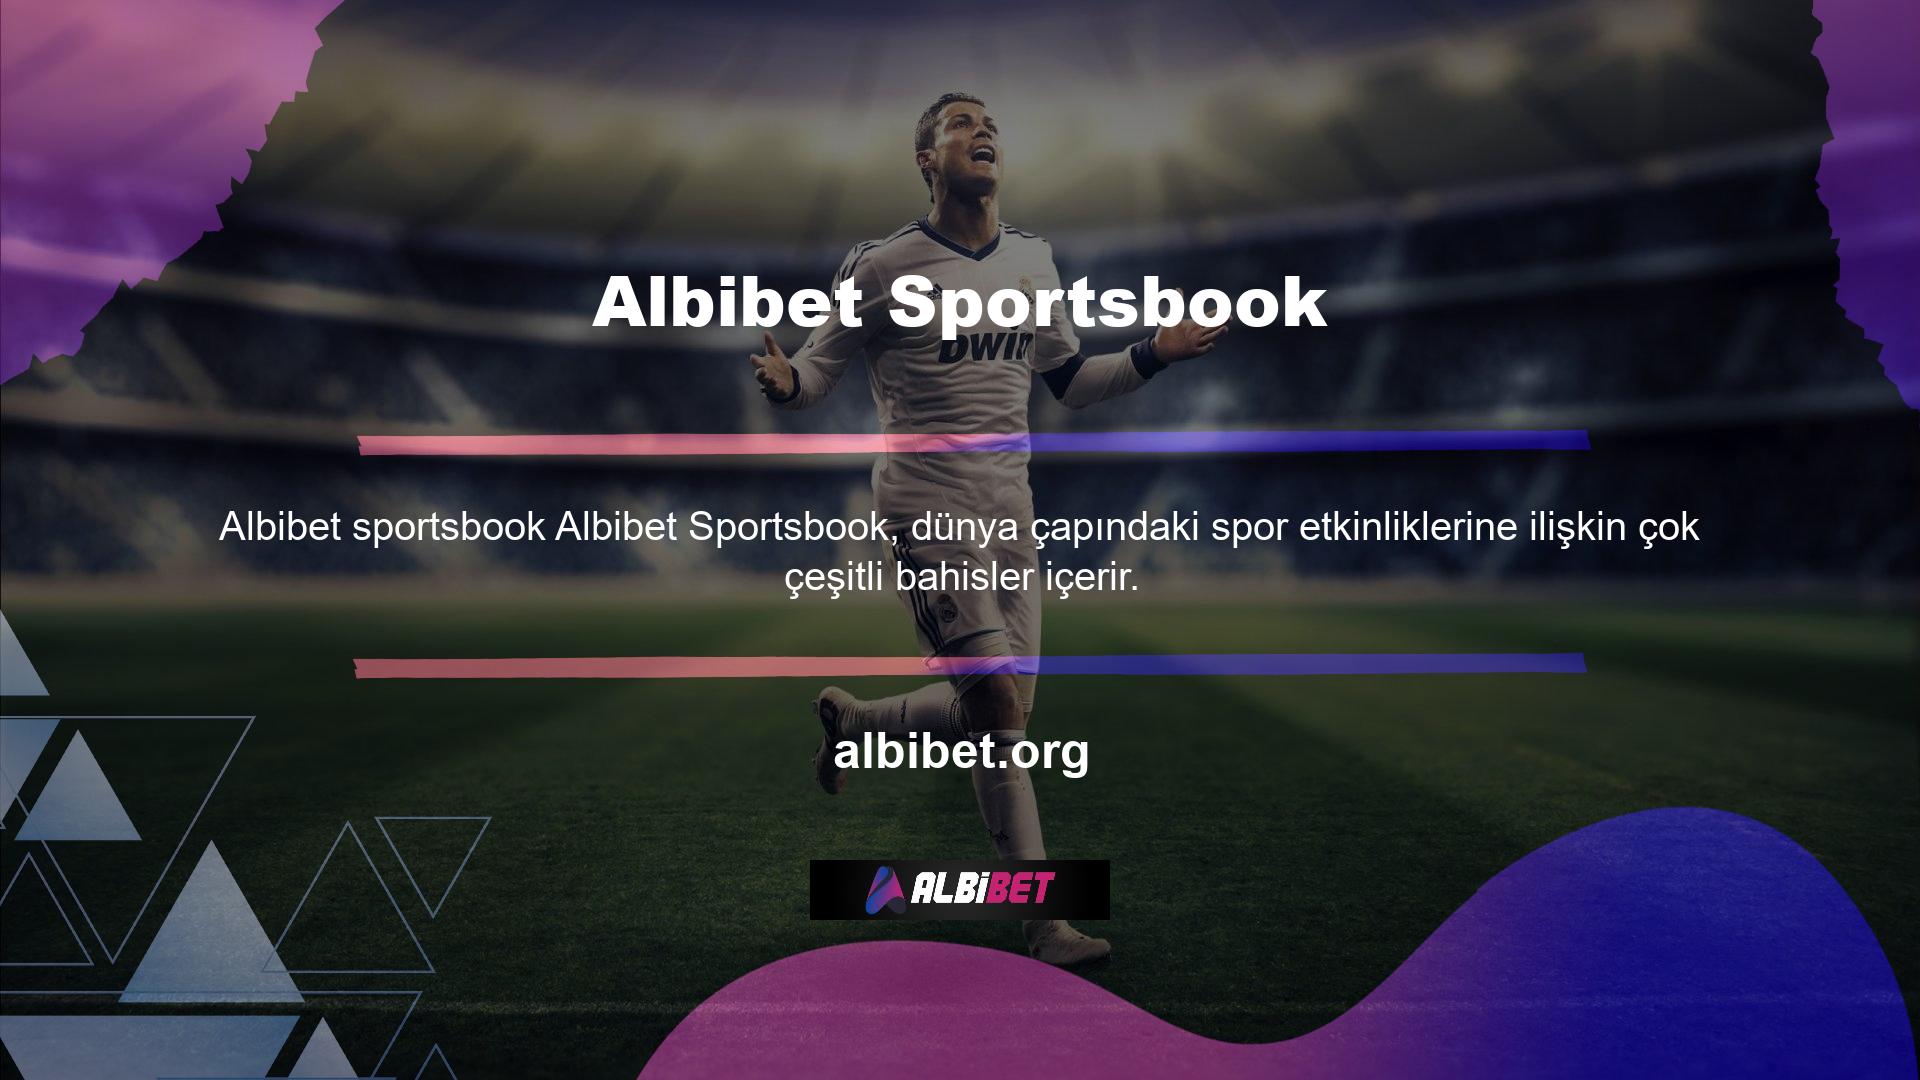 Albibet, çeşitli spor etkinliklerine ilişkin birçok bahis türünü içerir ve maç öncesi ve canlı bahis seçenekleri sunar